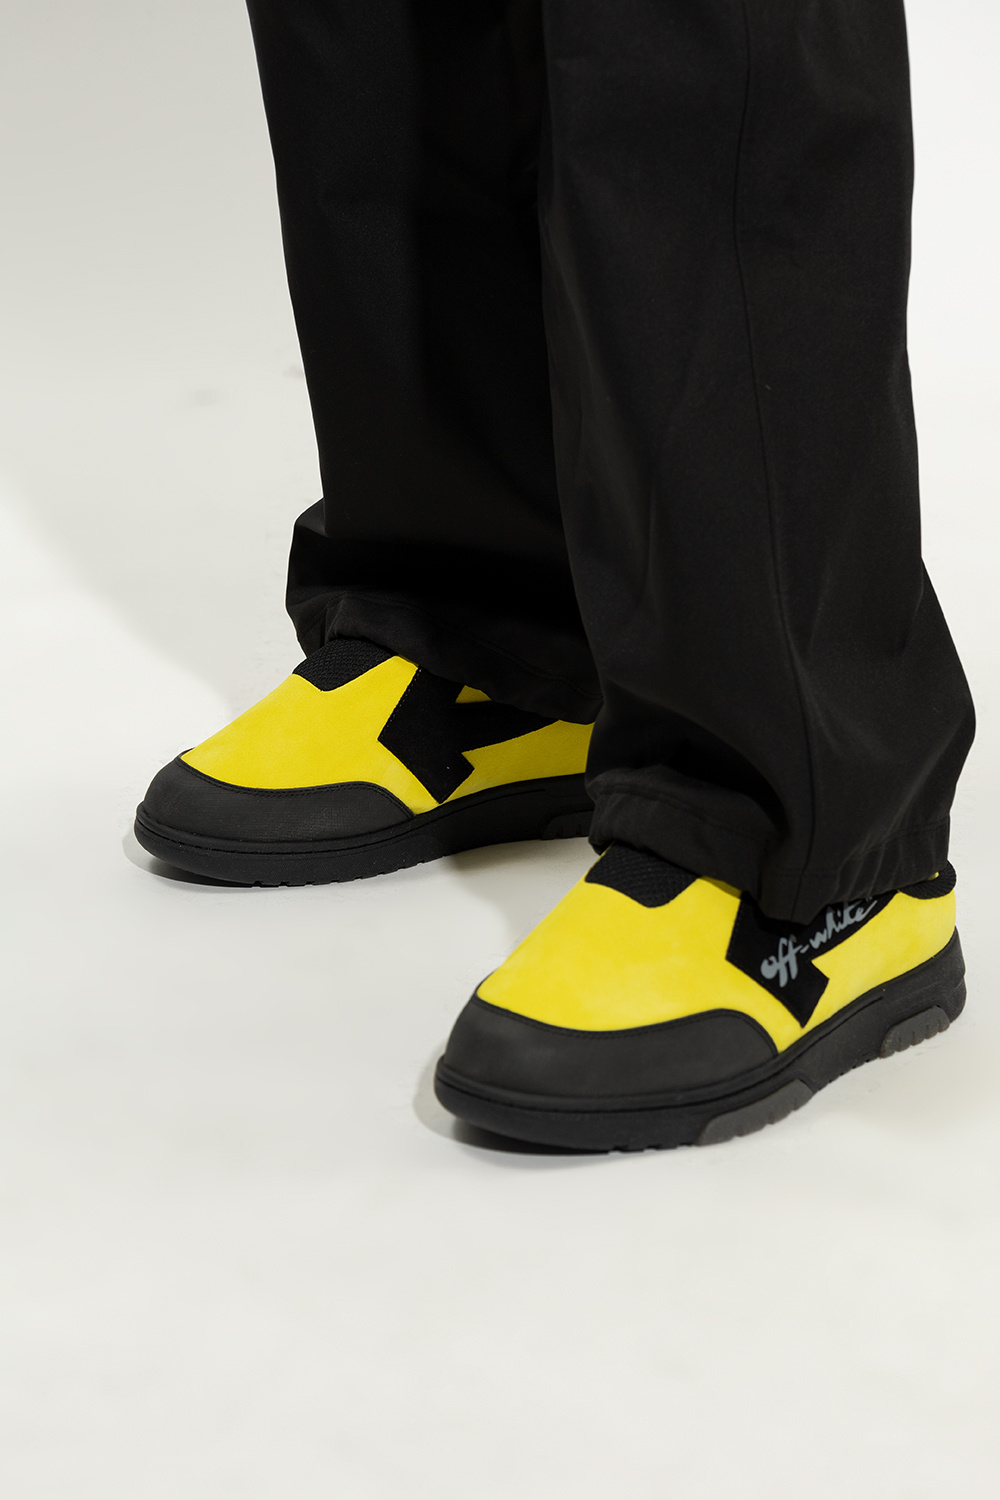 Off-White zapatillas de running Brooks entrenamiento trail neutro talla 40 amarillas más de 100